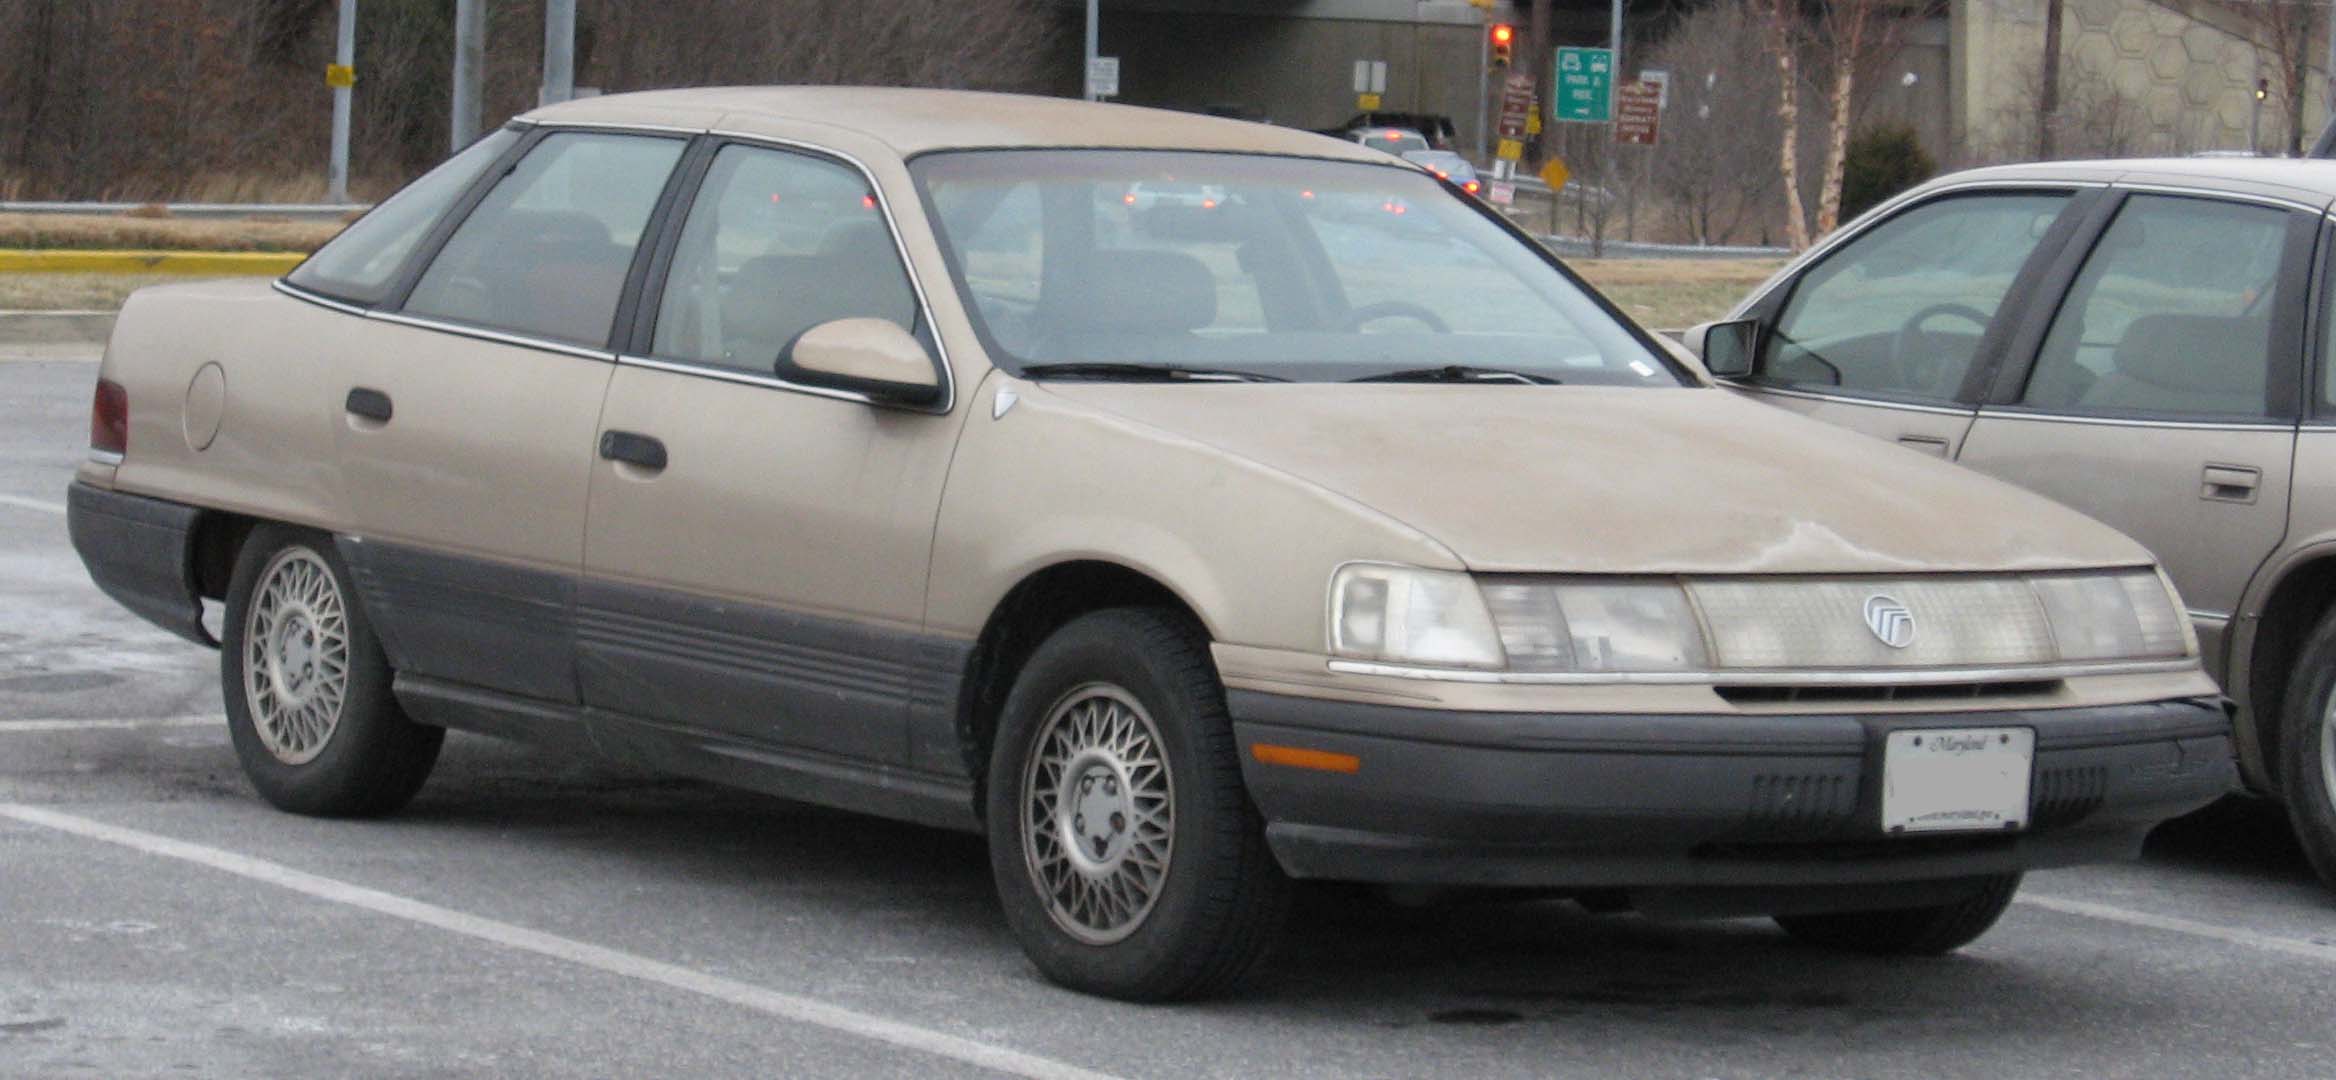 Mercury Sable I 1986 - 1991 Sedan #3